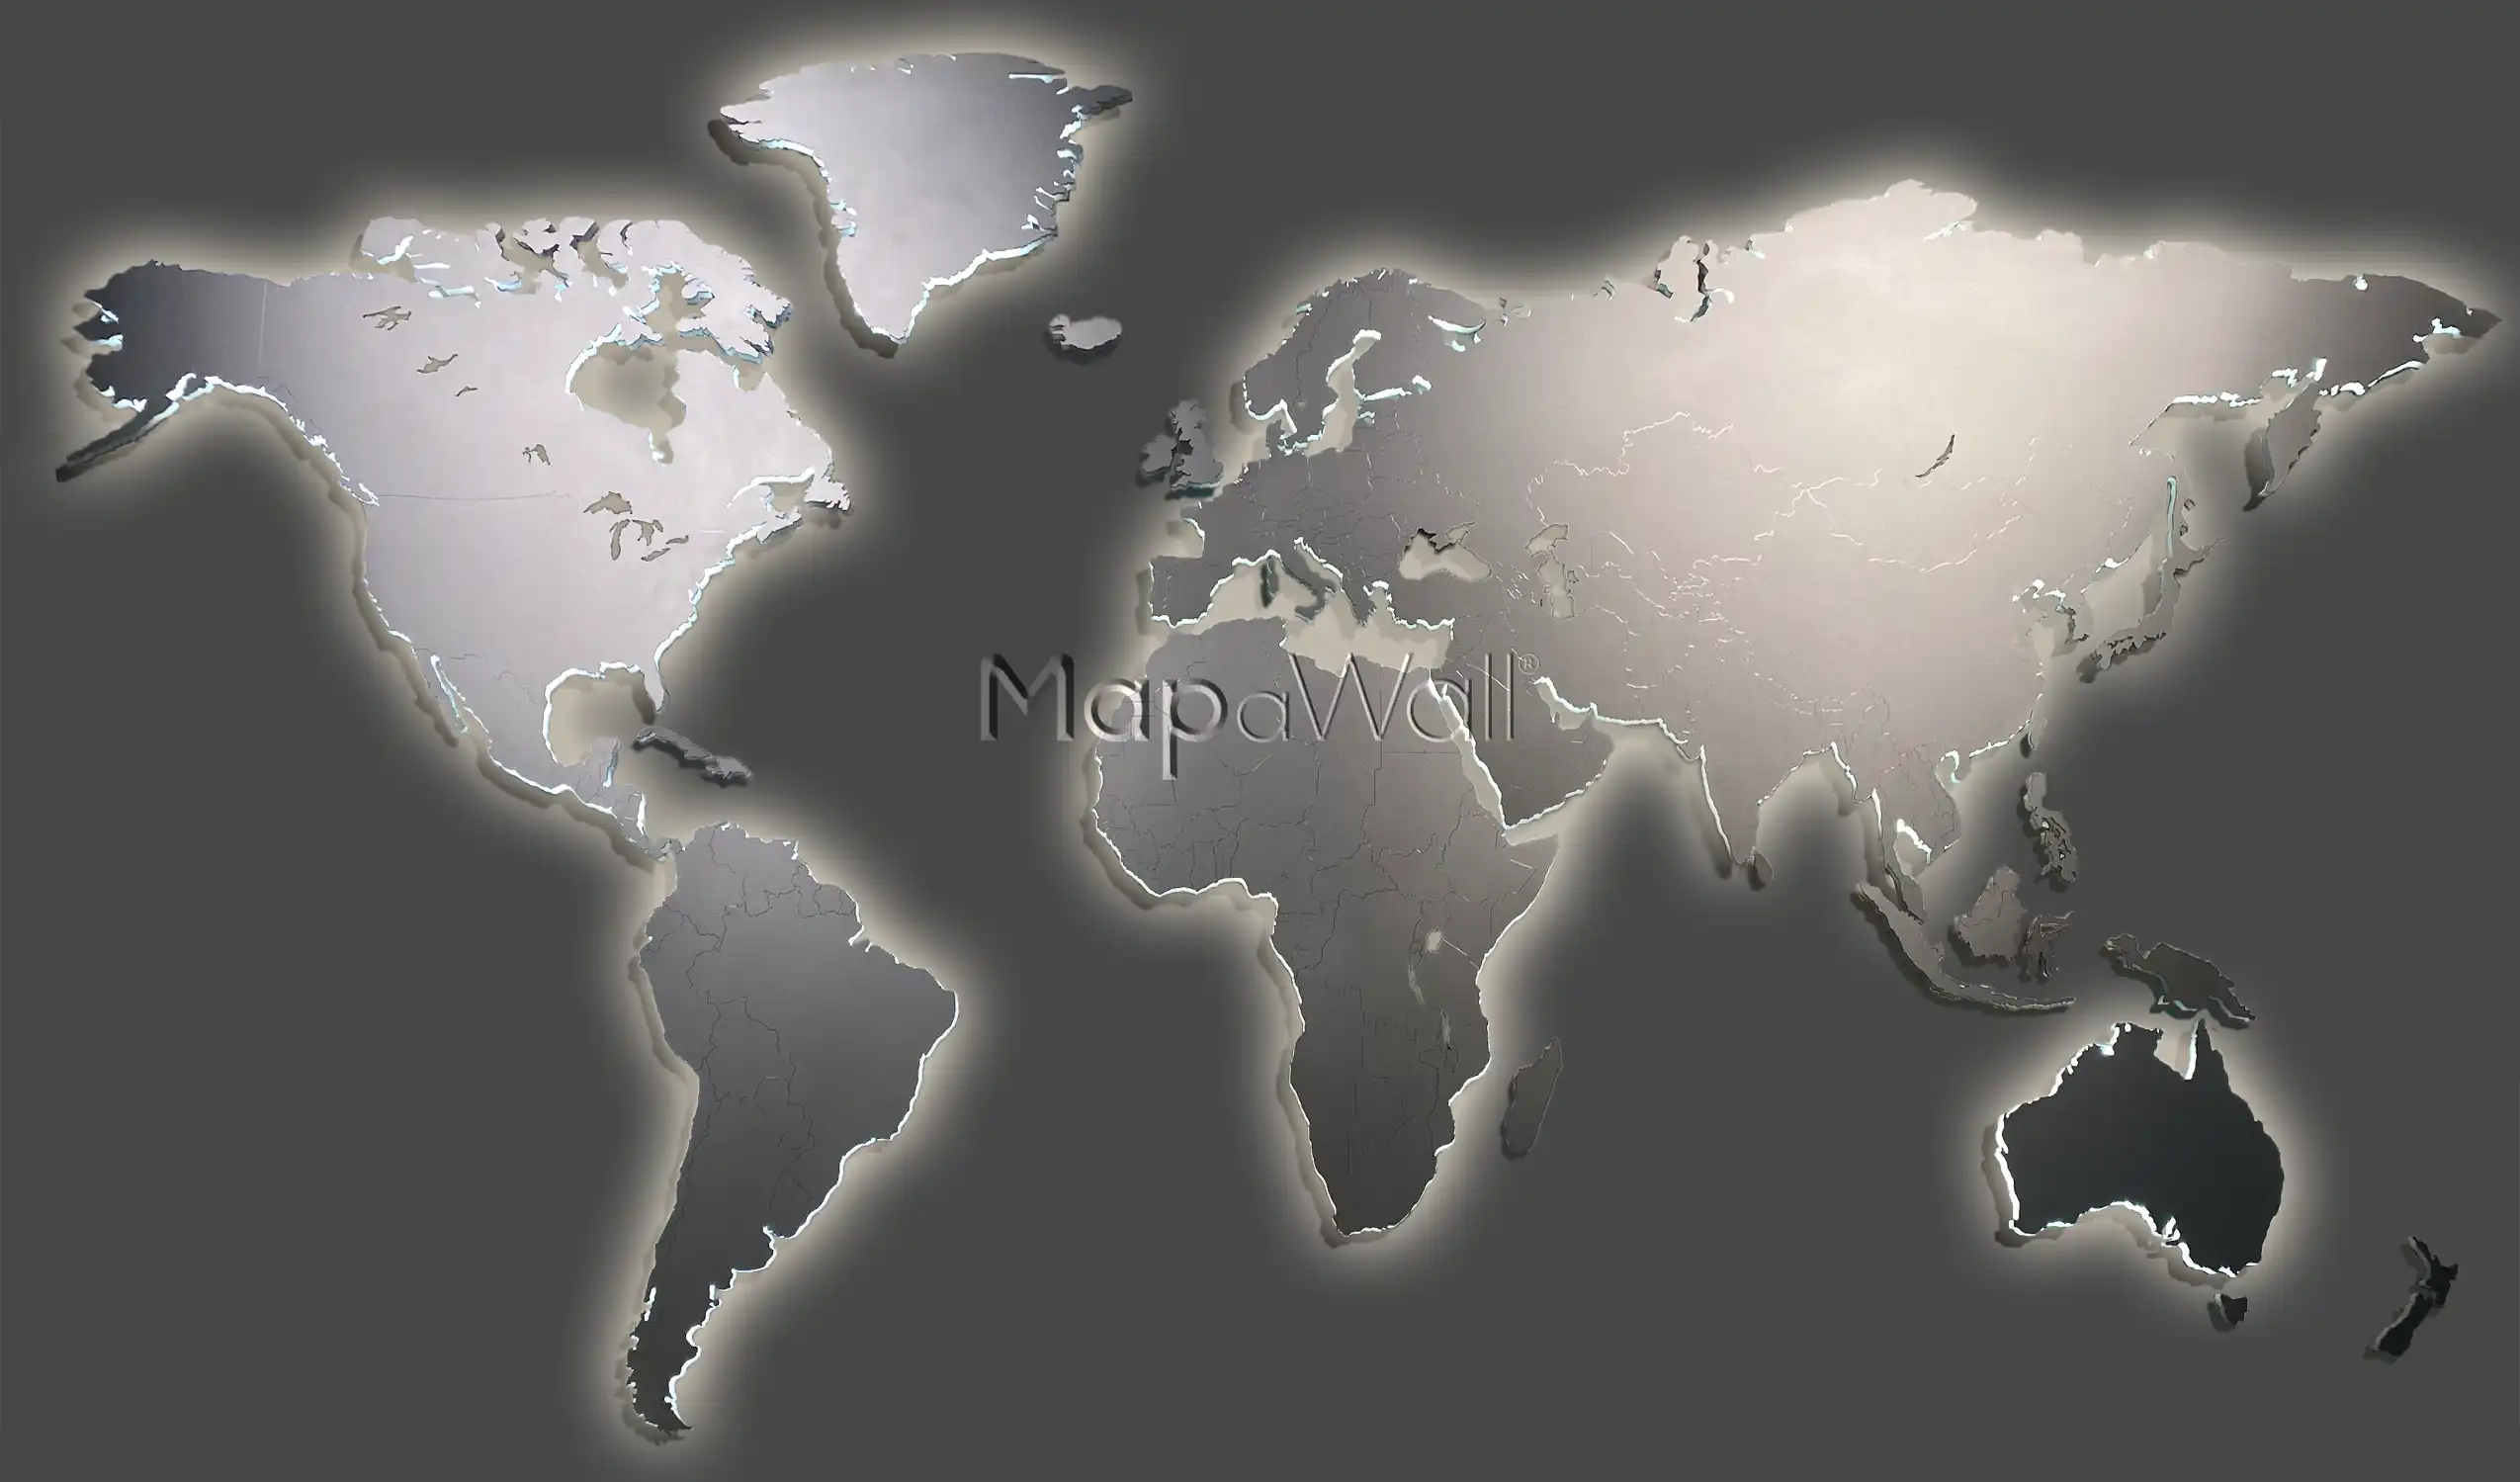 Illuminated stainless steel world map on dark background